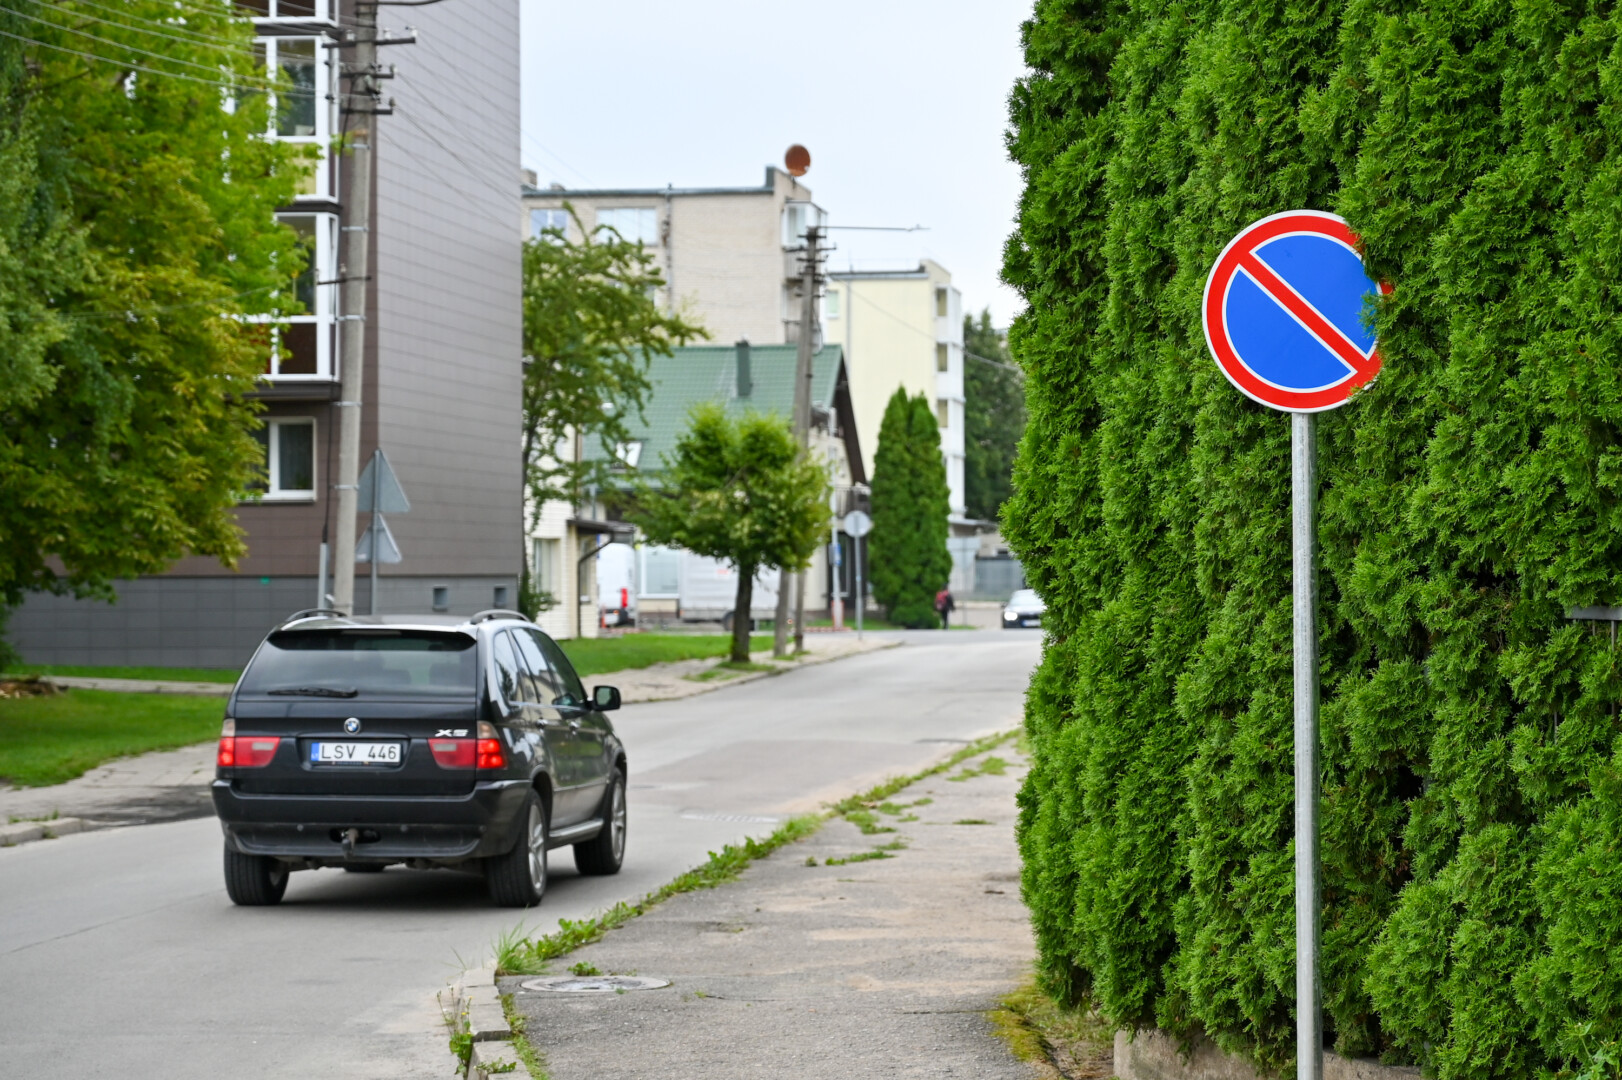 Užsikemšančias Panevėžio gatves bandoma laisvinti draudimu statyti automobilius.